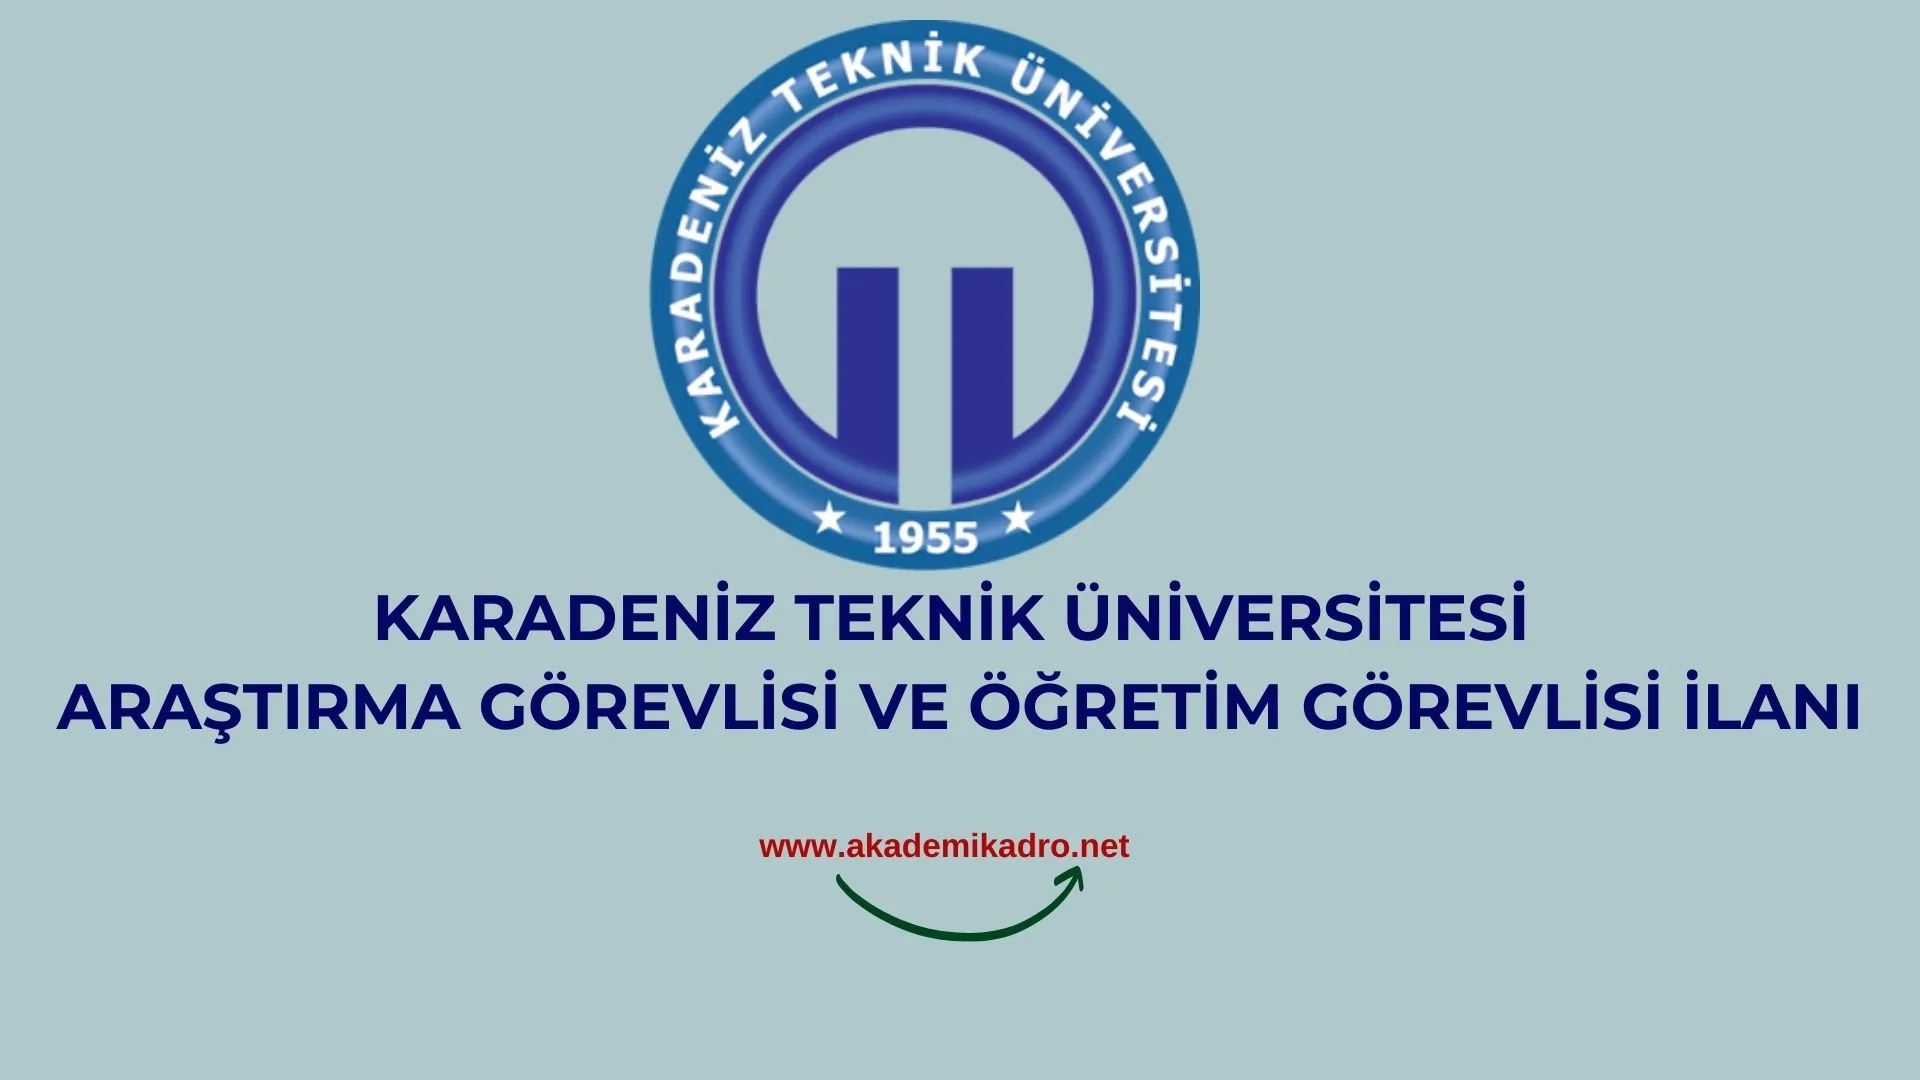 Karadeniz Teknik Üniversitesi 3 Öğretim üyesi, Araştırma Görevlisi ve Öğretim Görevlisi alacaktır. Son başvuru tarihi 05 Ekim 2022